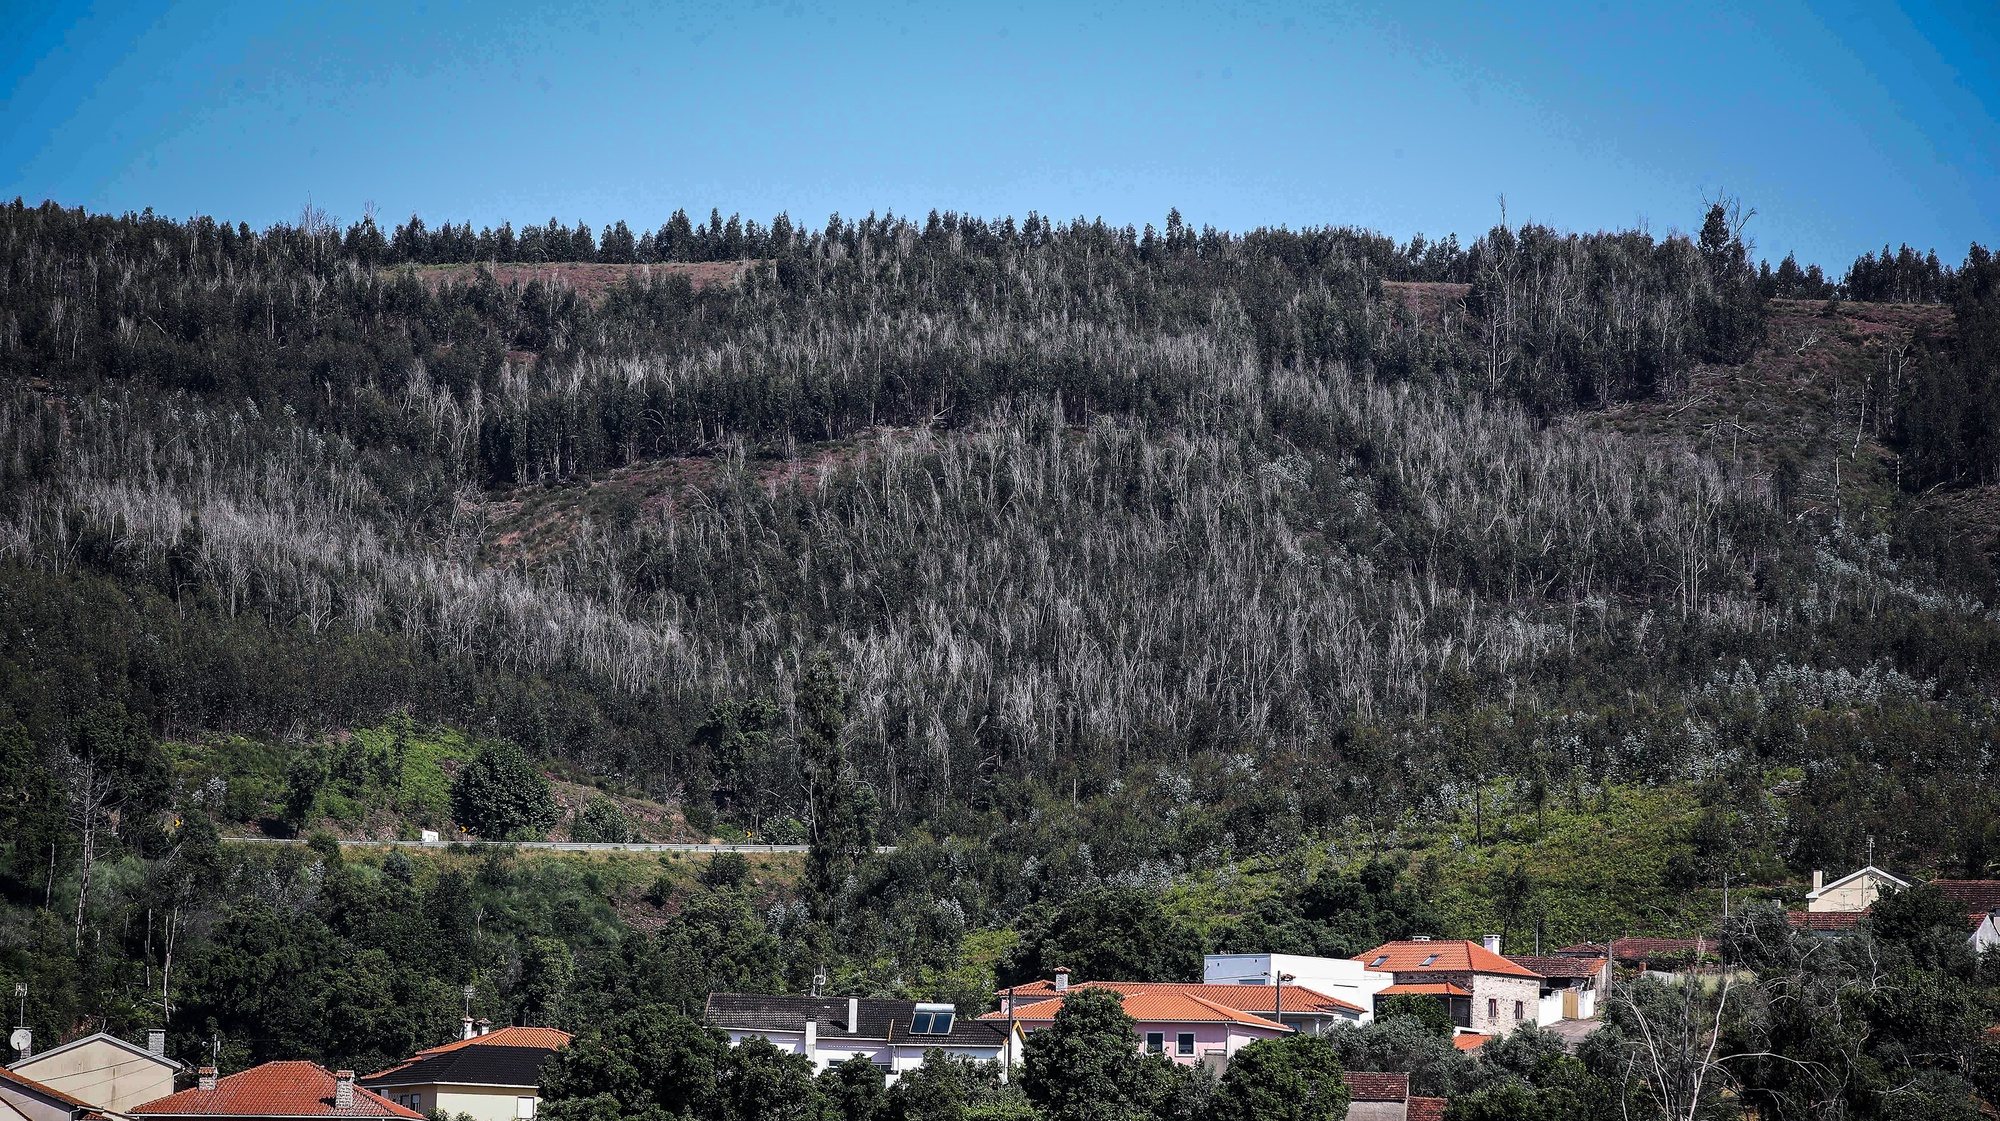 Nas aldeias dos concelhos de Pedrógão Grande, Castanheira de Pêra e Figueiró dos Vinhos ainda são bem visíveis os sinais de destruição  4 anos depois do incêndios de Pedrógão Grande, com casas que continuam destruídas e árvores queimadas por cortar, Castanheira de Pêra,14 de junho de 2021. (ACOMPANHA TEXTO DE 16/06/2021) PAULO NOVAIS/LUSA